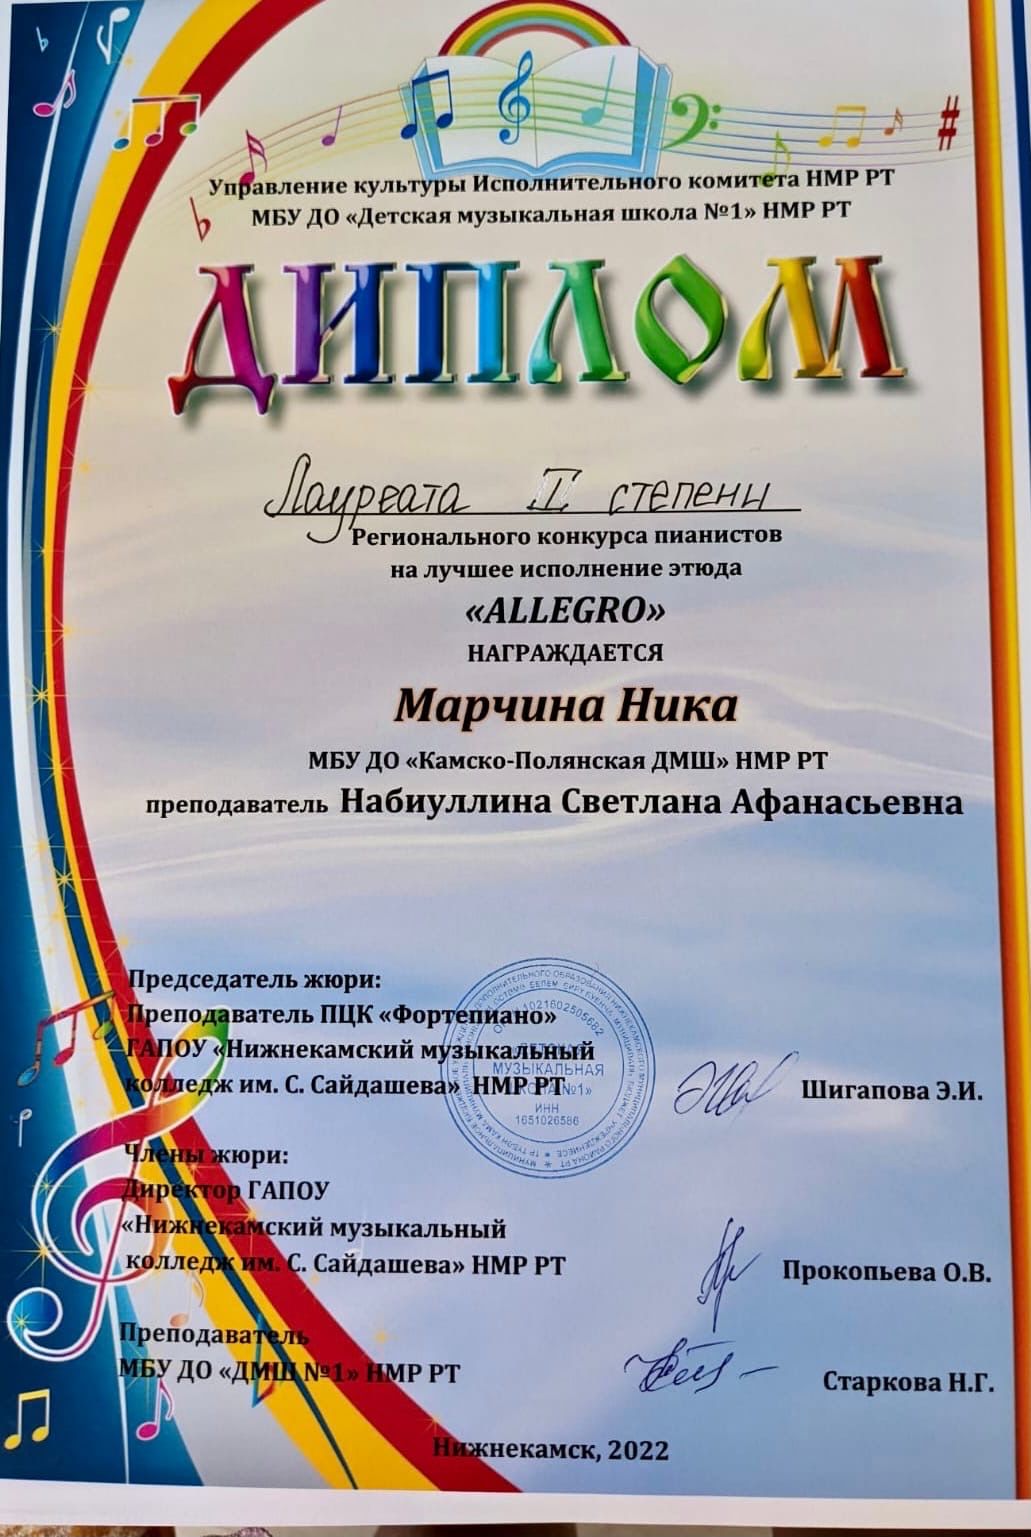 Камполянские пианисты приняли участие в региональном конкурсе в г. Нижнекамск